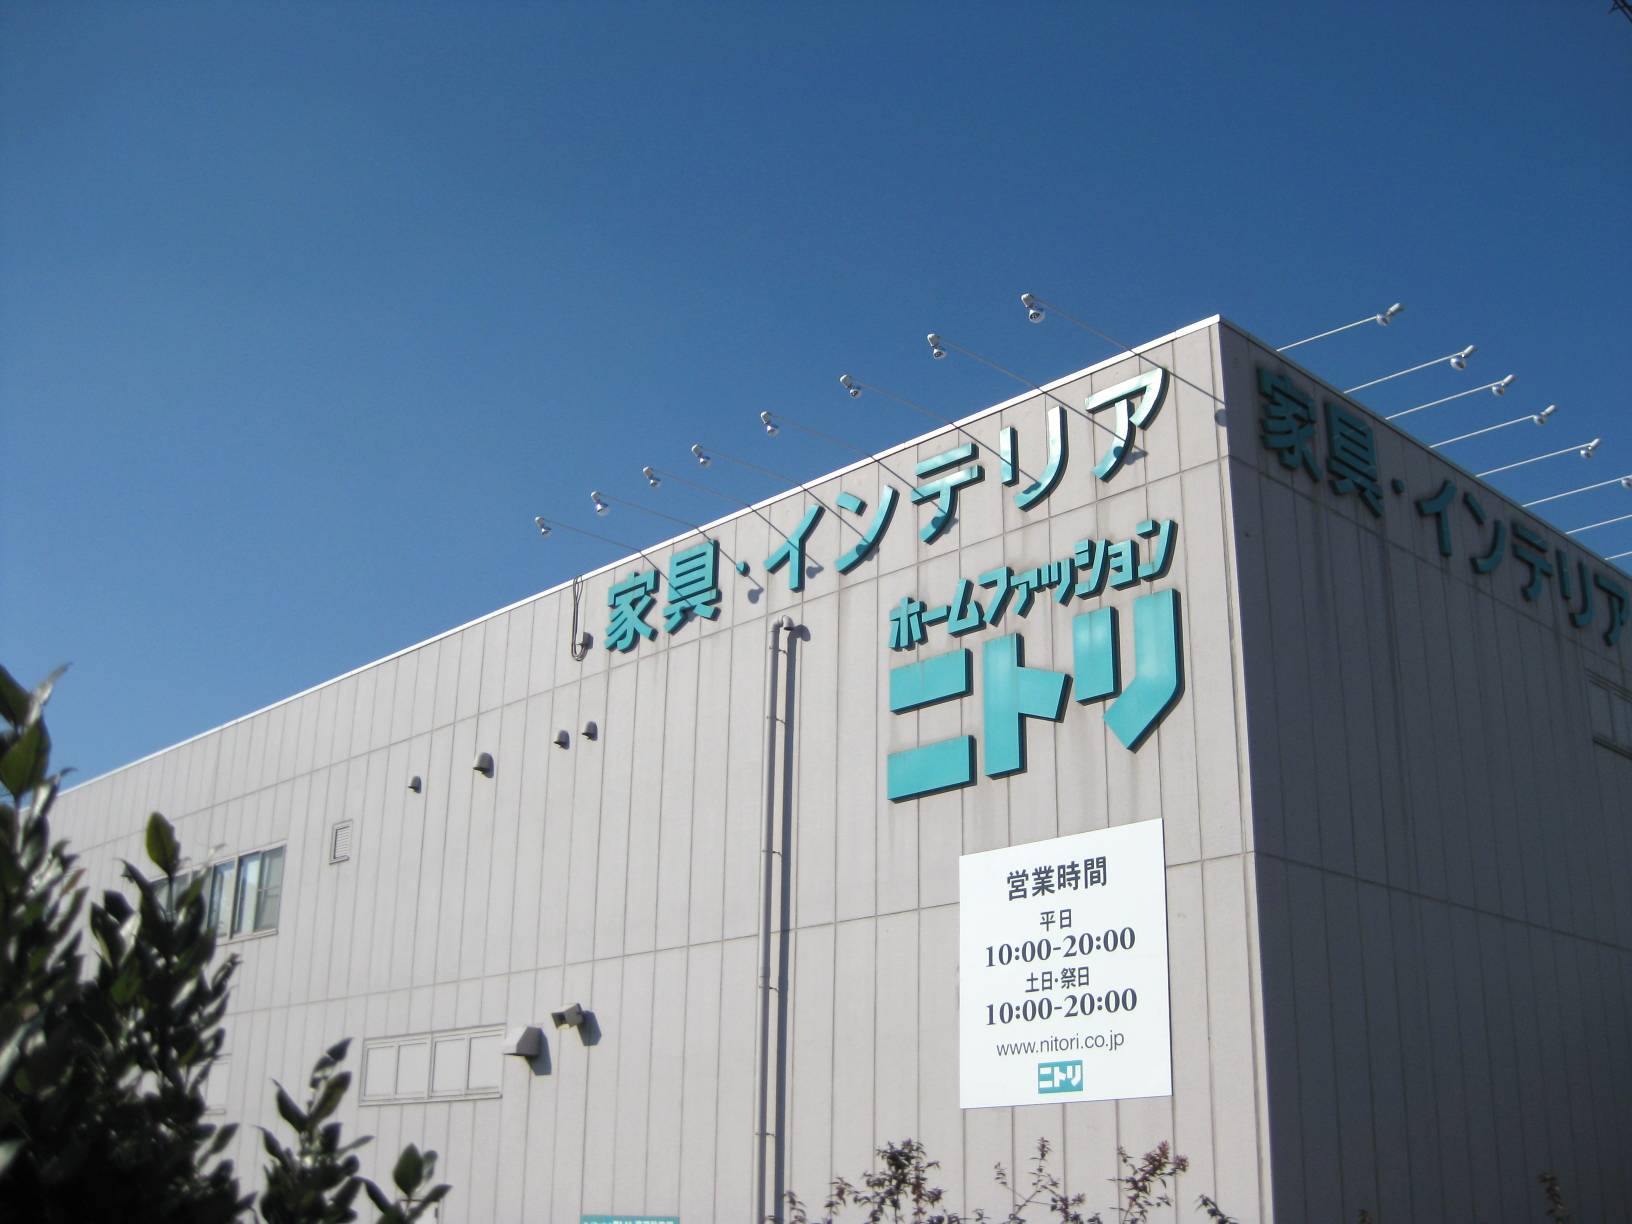 Home center. 1284m to Nitori Yachiyo store (hardware store)